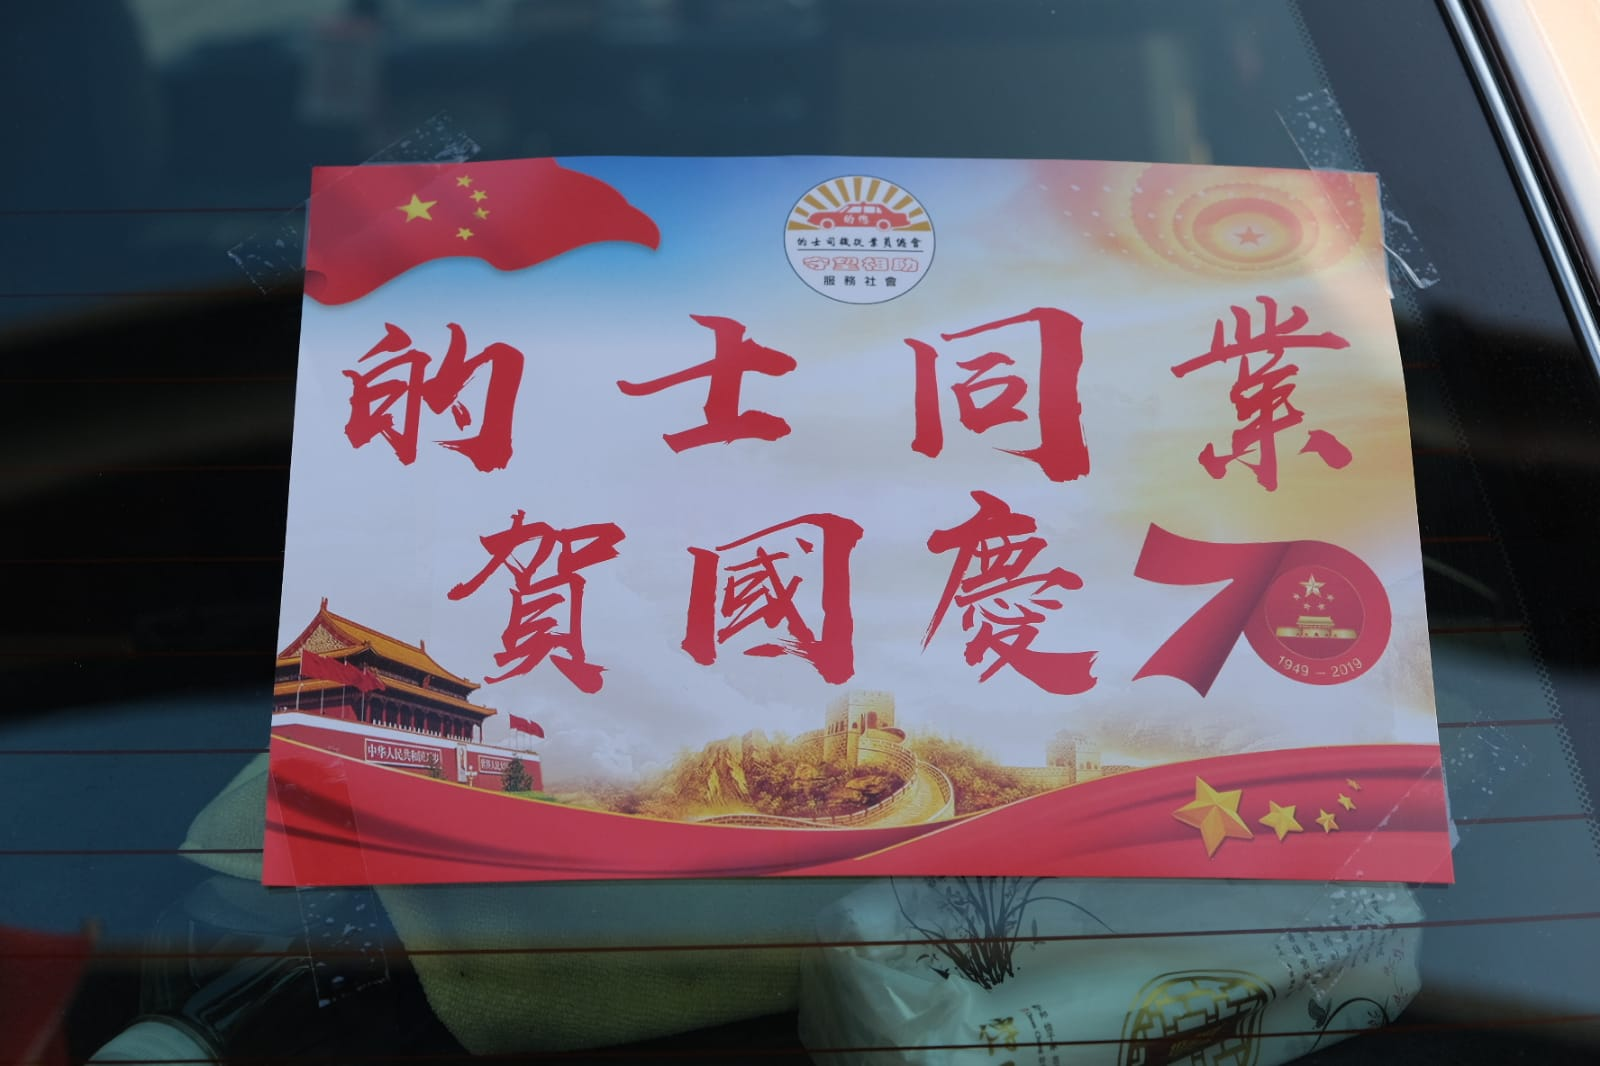 在巡游的出租车上贴有“的士同业贺国庆”的海报(图片来源：香港“橙新闻”)